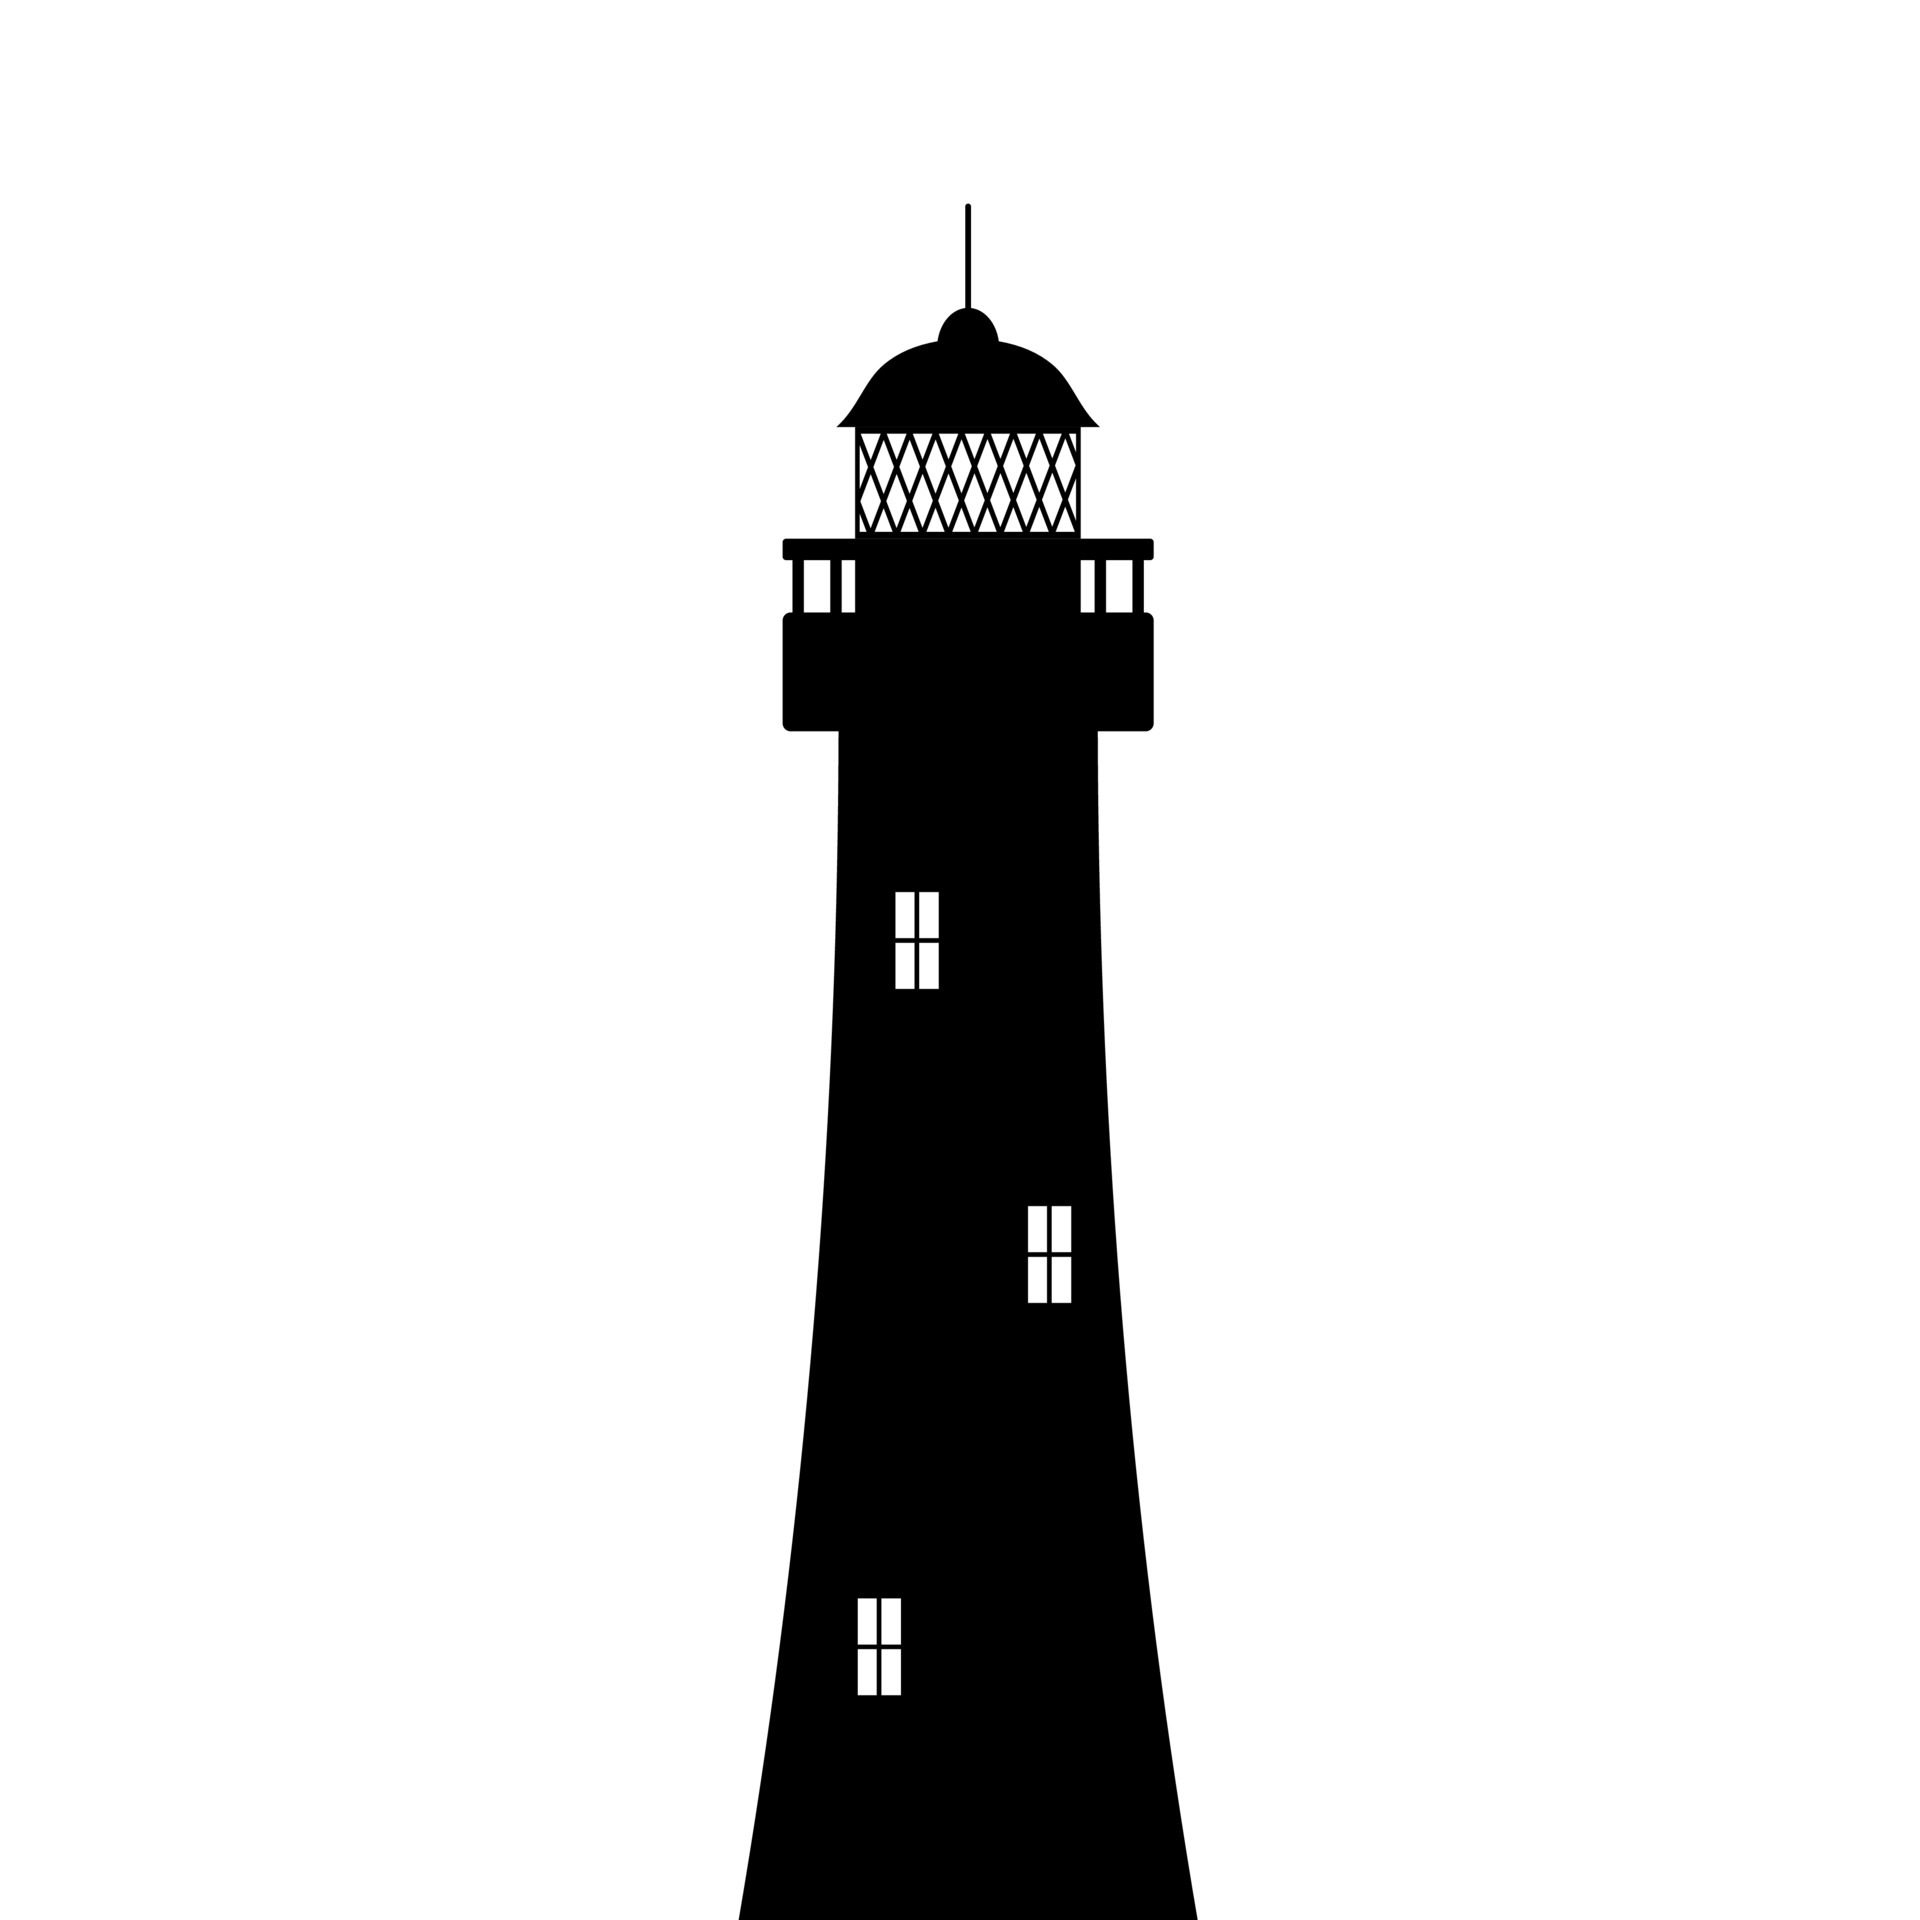 Leuchtturm-Silhouette. Schwarzer Turm mit Flutlichtkuppel und